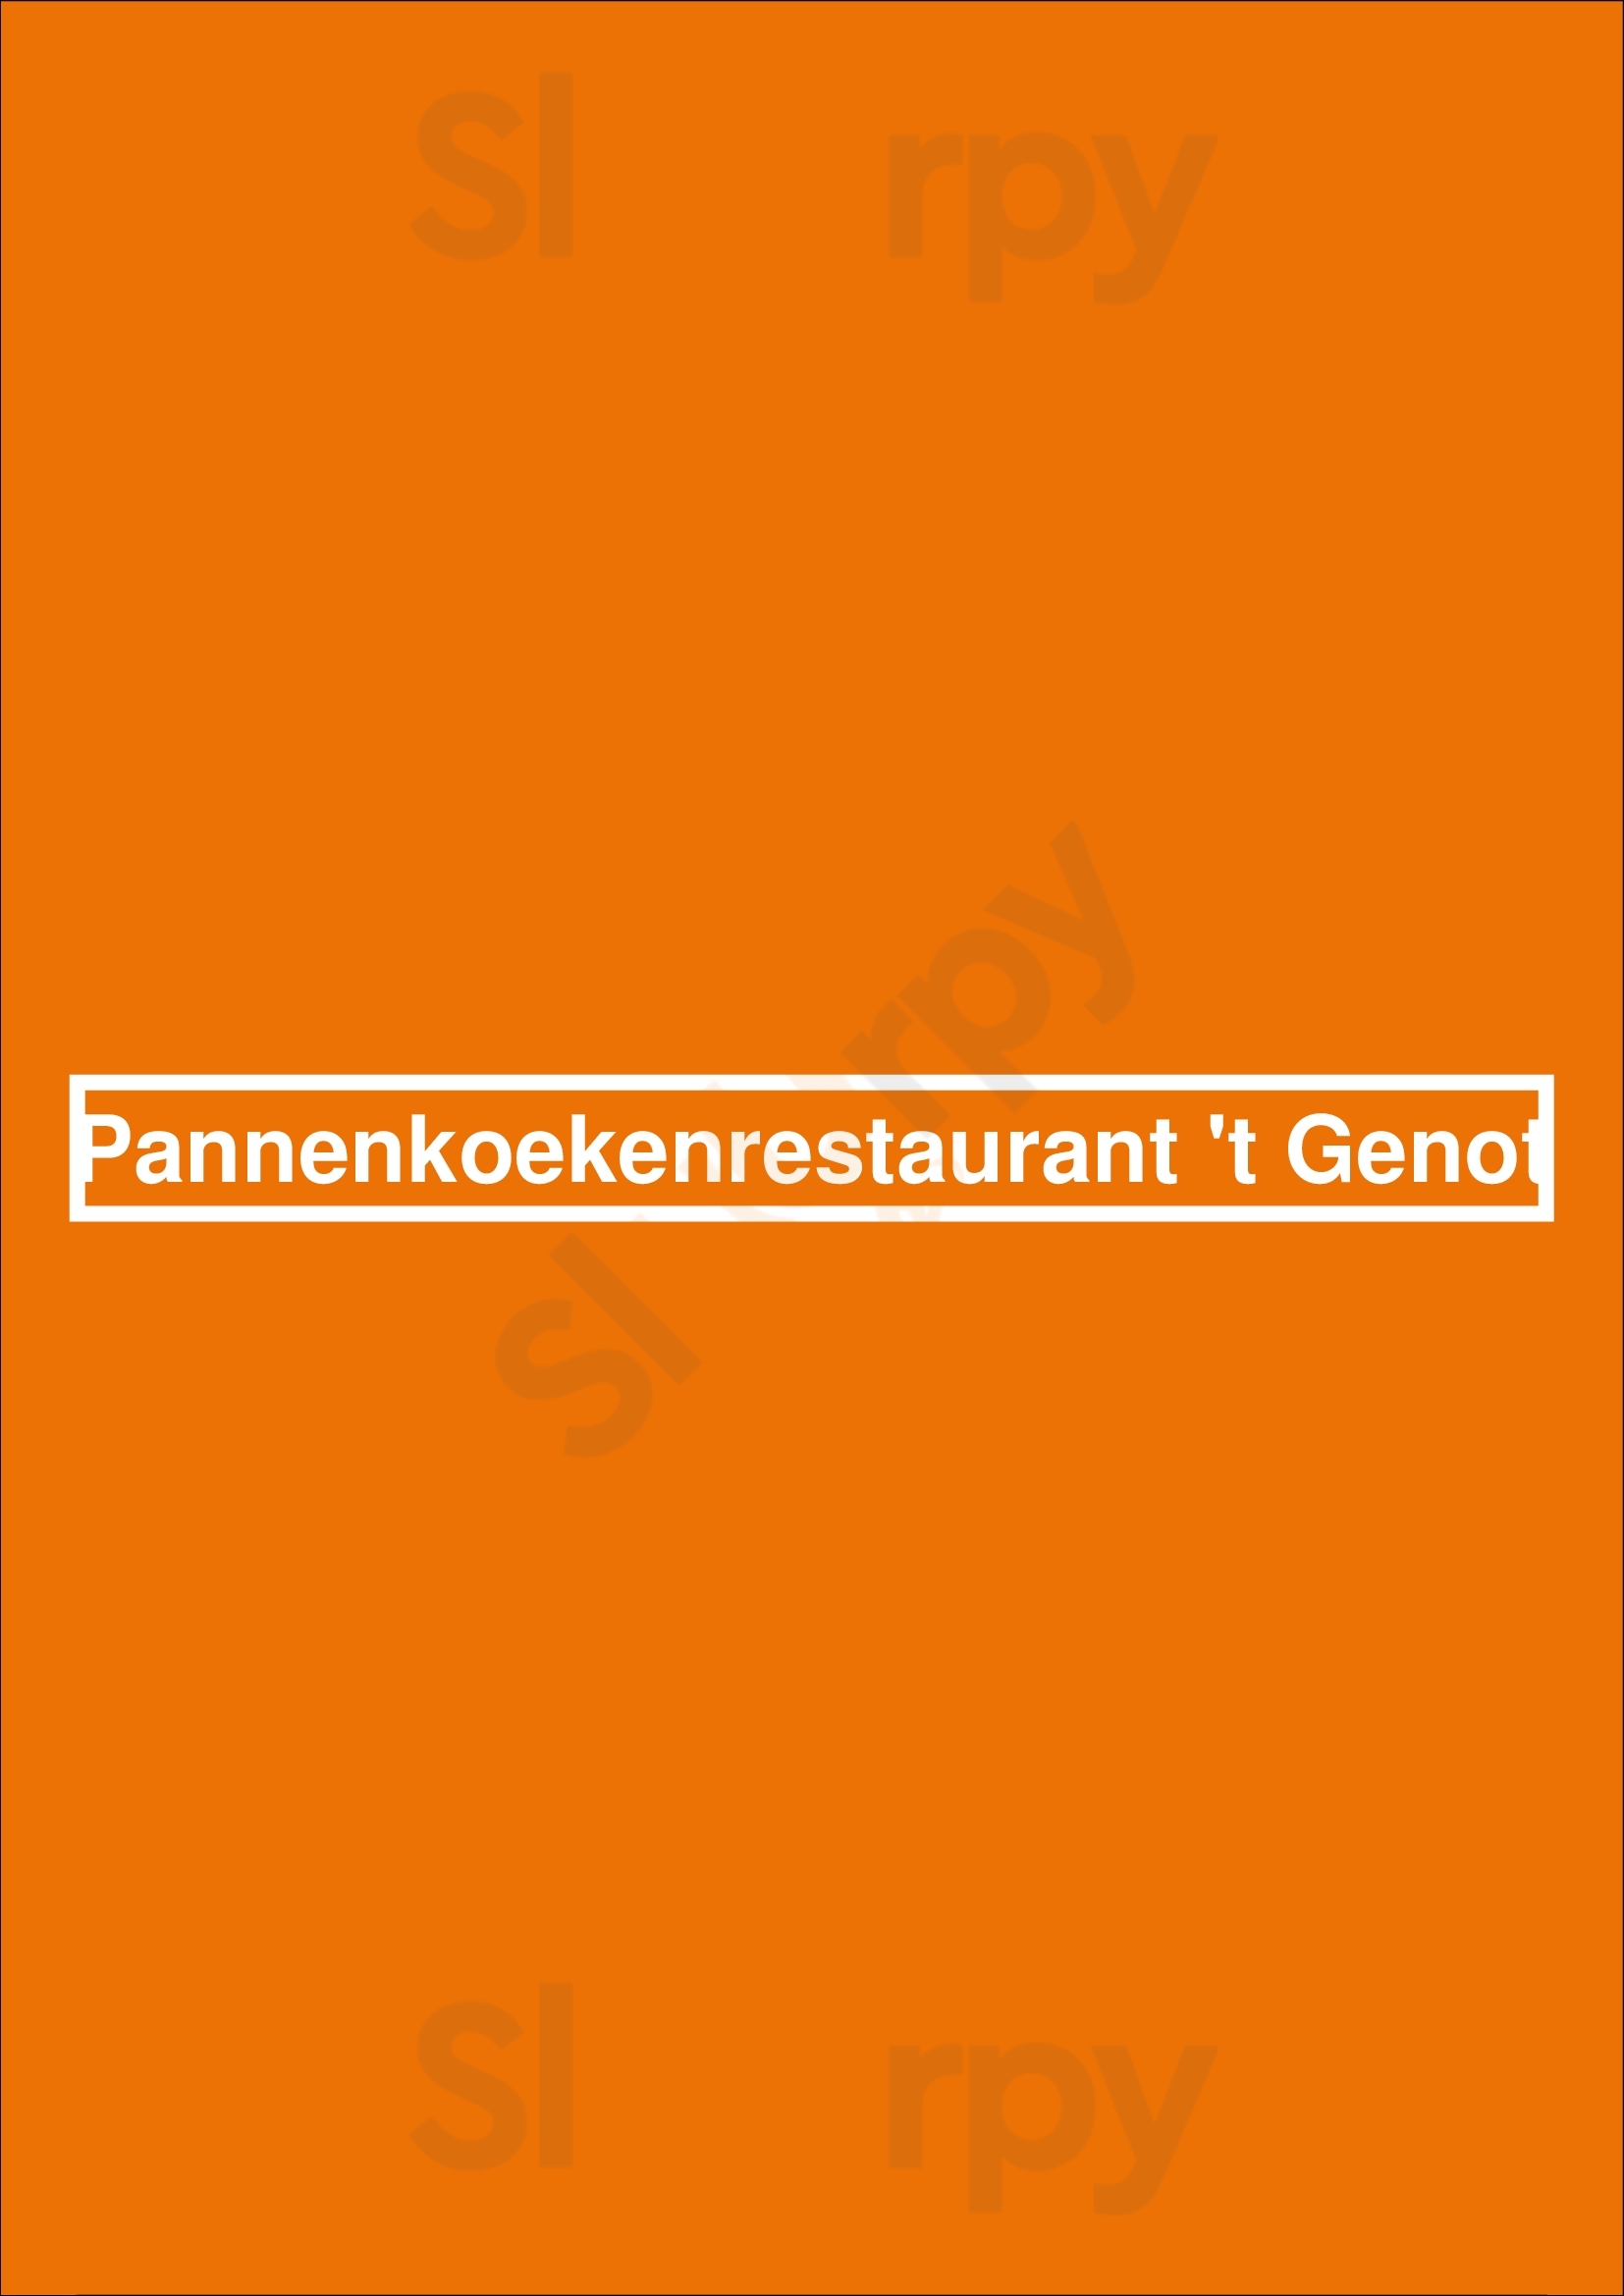 Pannenkoekenrestaurant 't Genot Vierlingsbeek Menu - 1